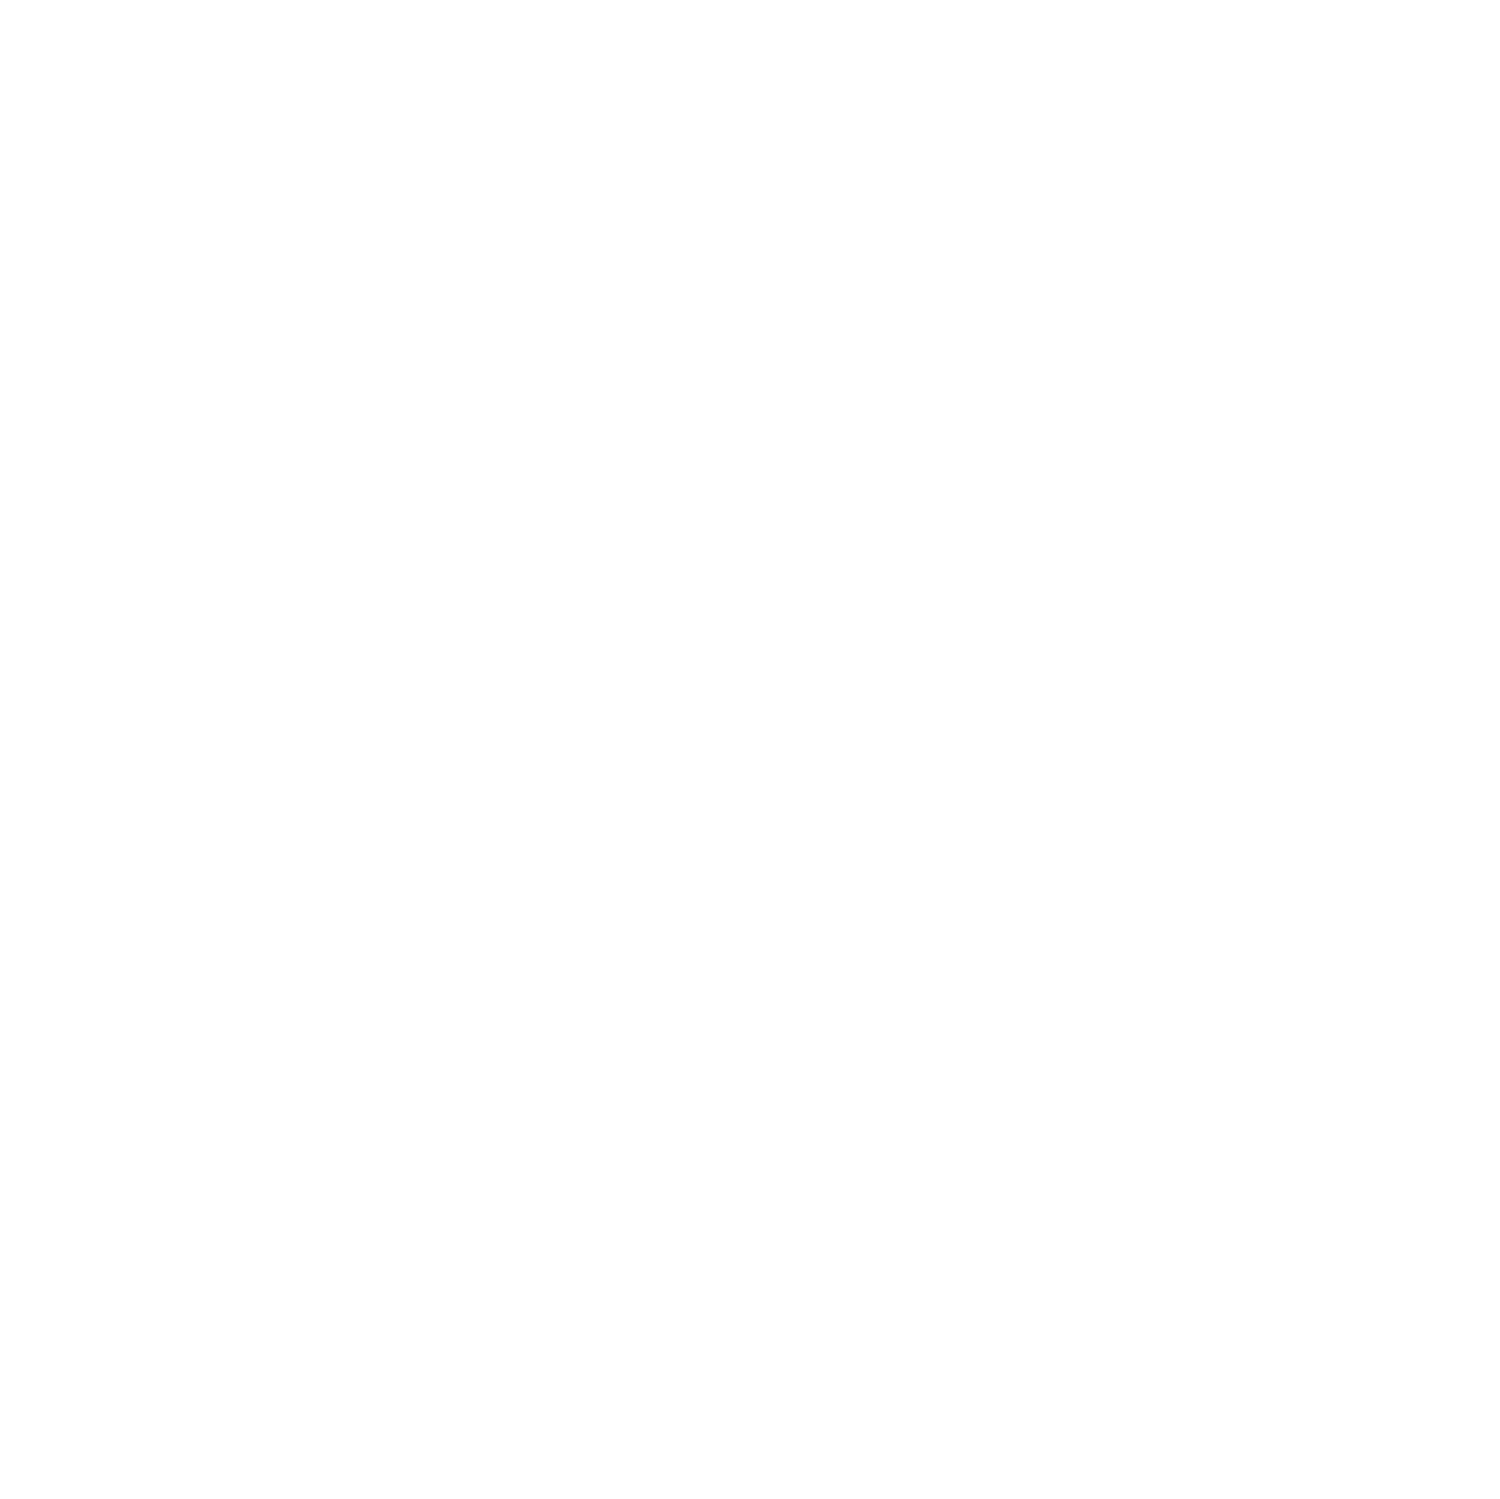 Ben Wallick